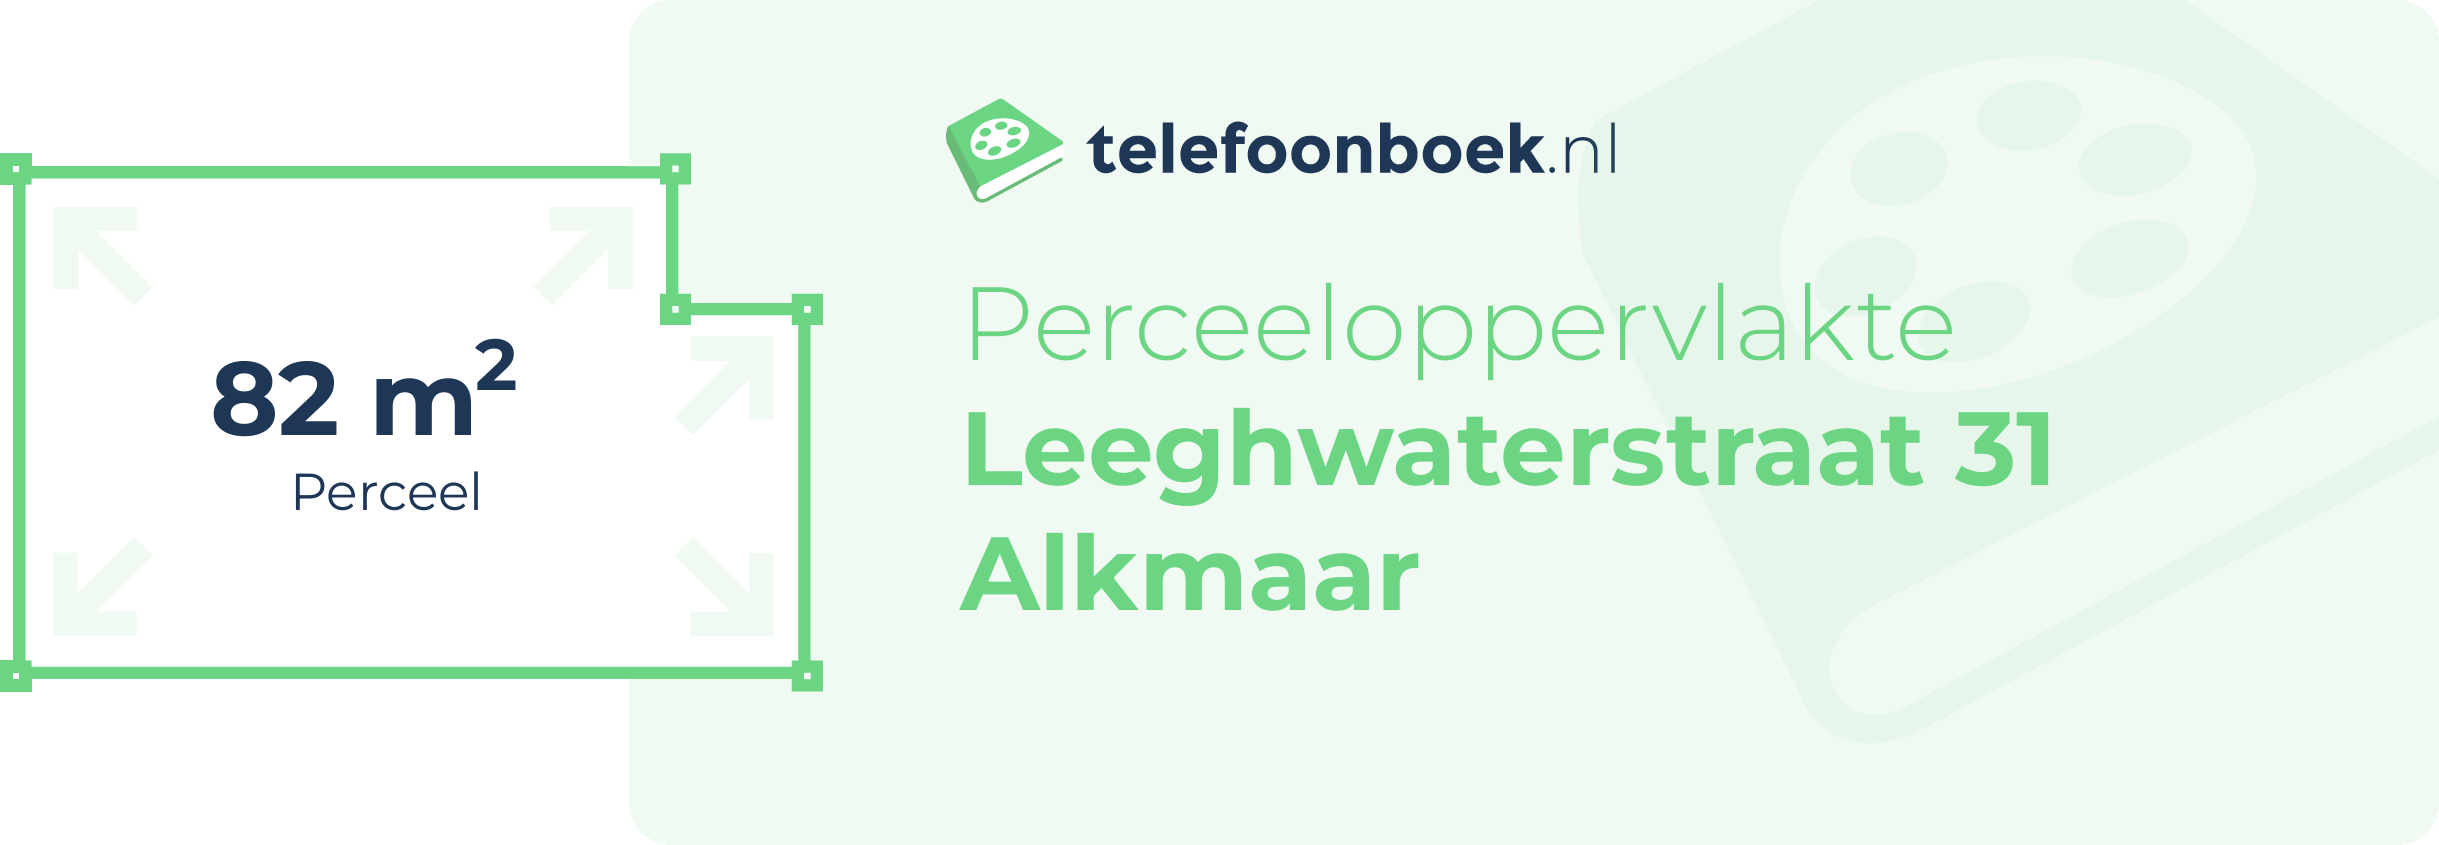 Perceeloppervlakte Leeghwaterstraat 31 Alkmaar